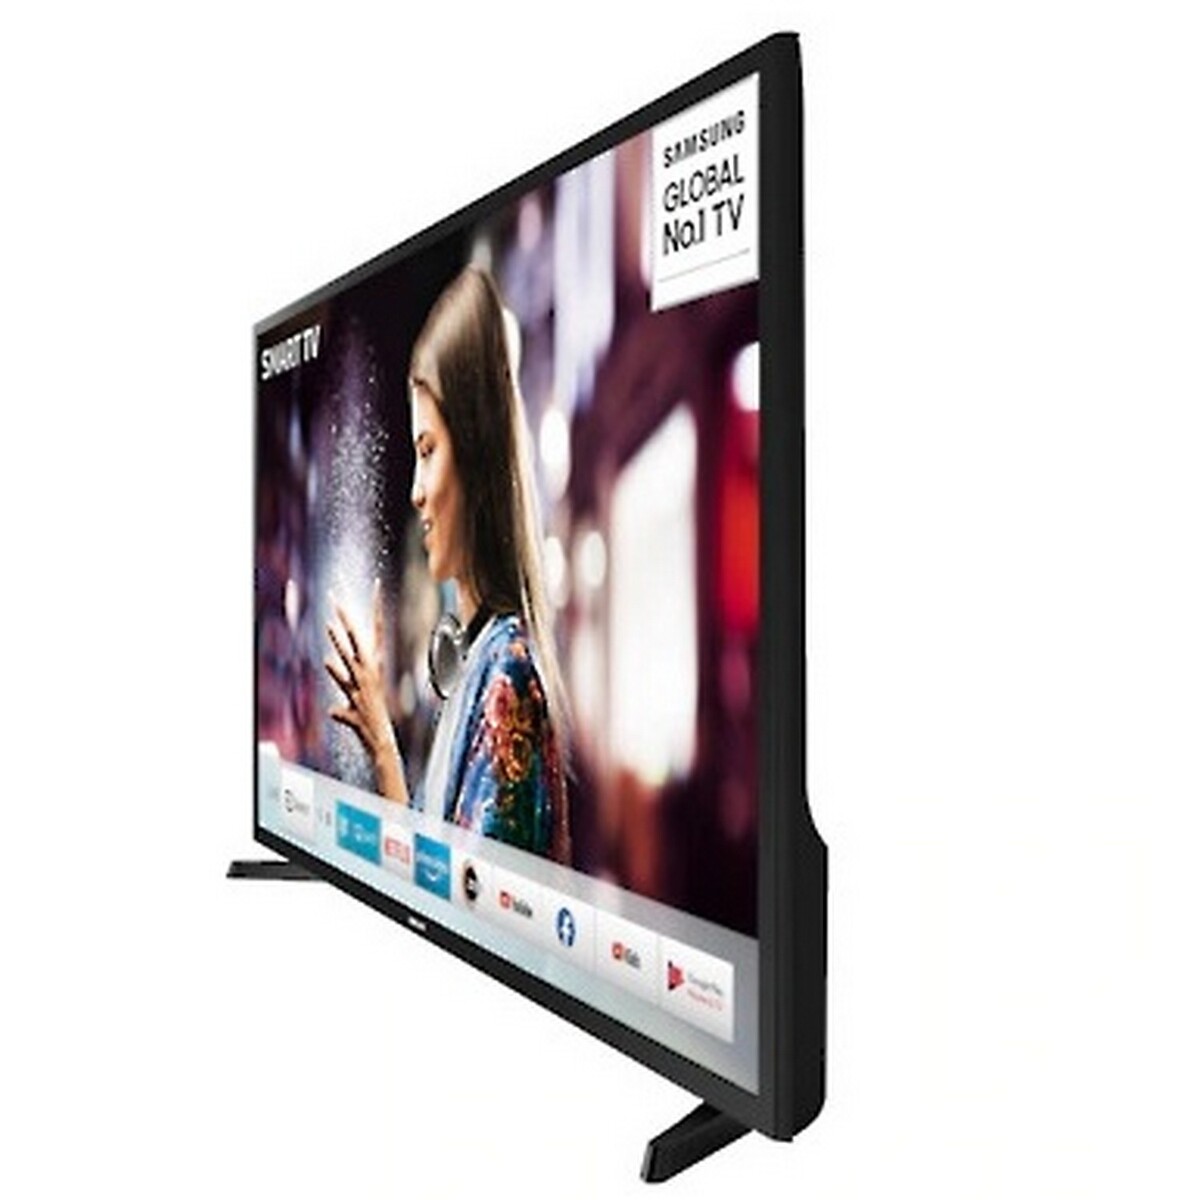 Samsung HD LED Smart TV UA32T4700A 32"